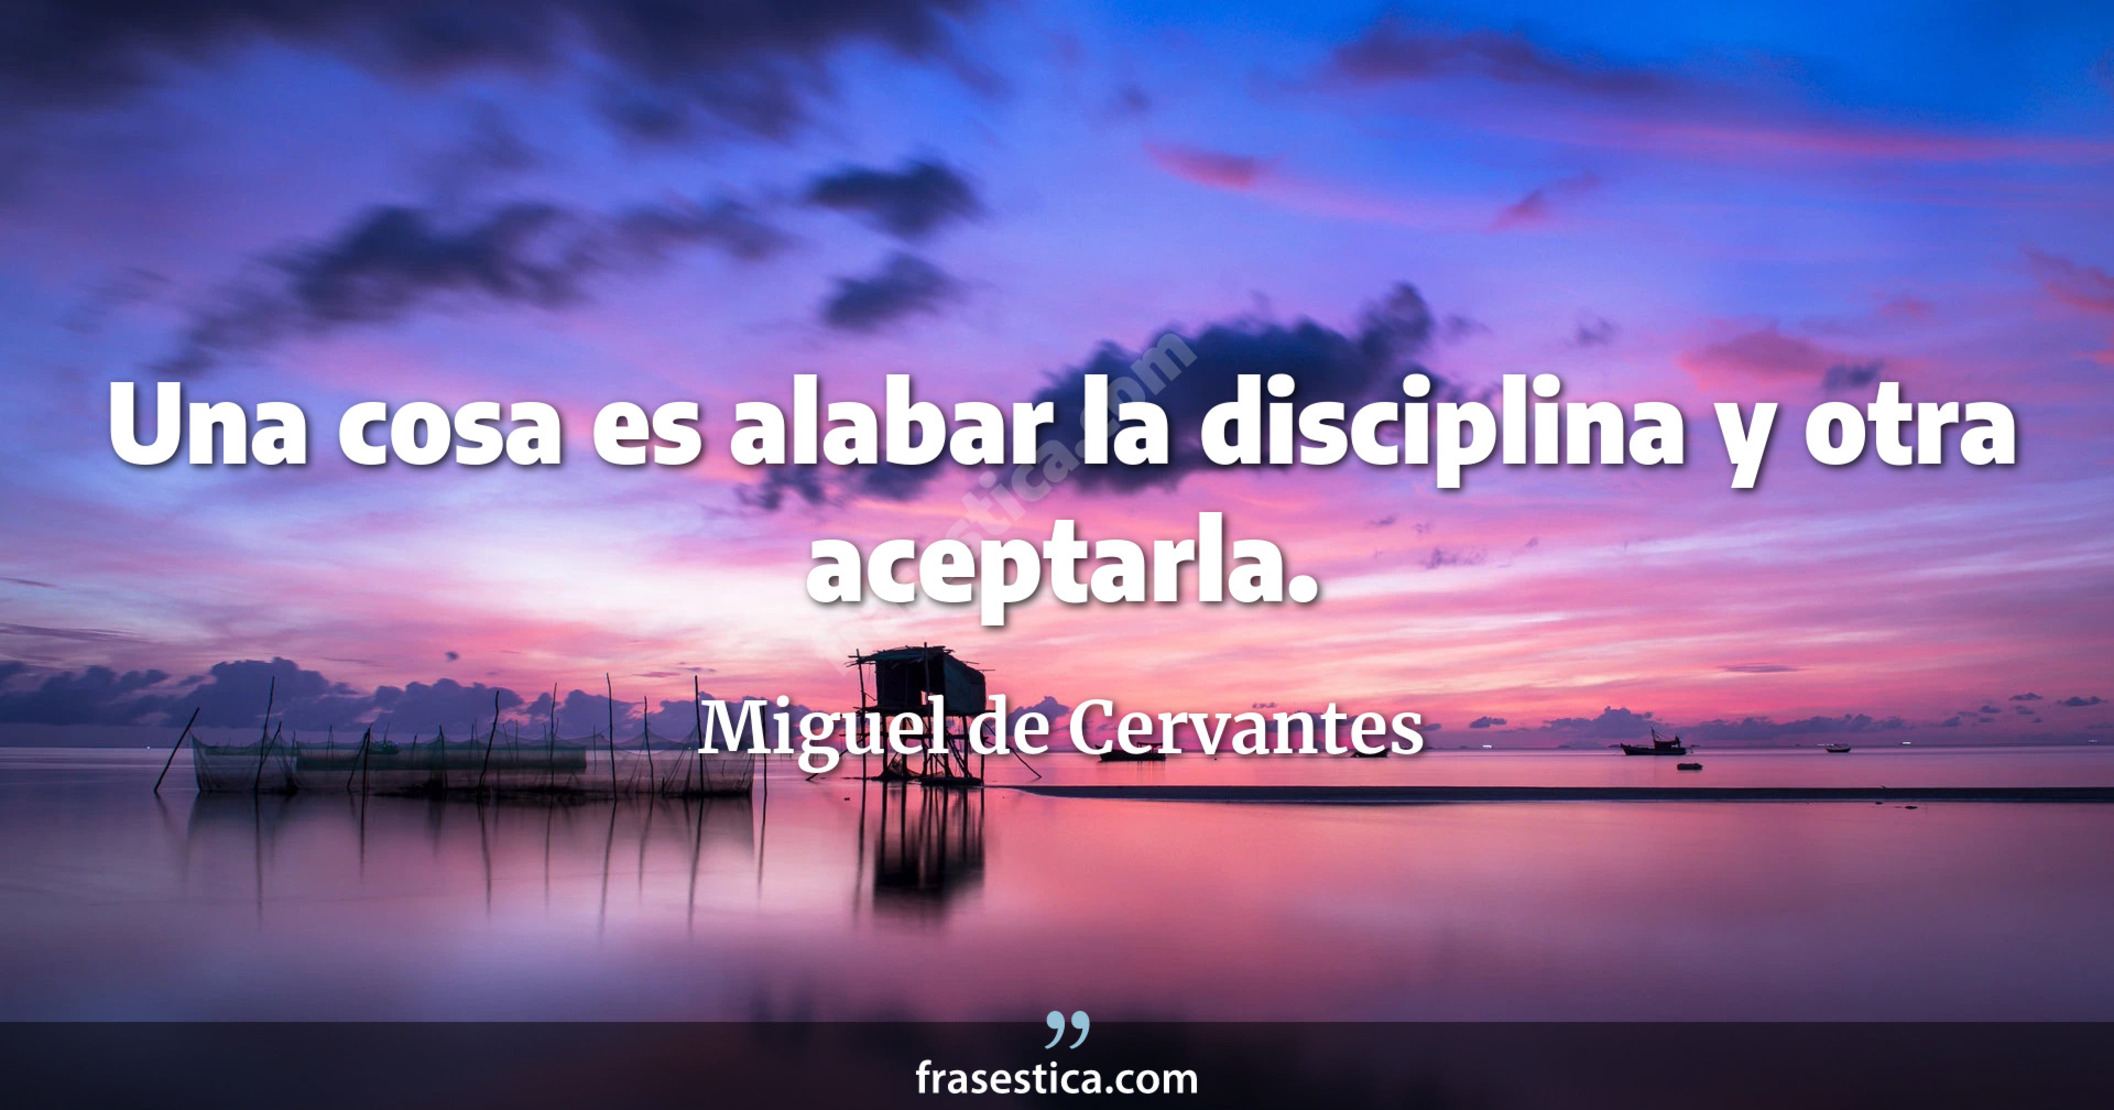 Una cosa es alabar la disciplina y otra aceptarla. - Miguel de Cervantes